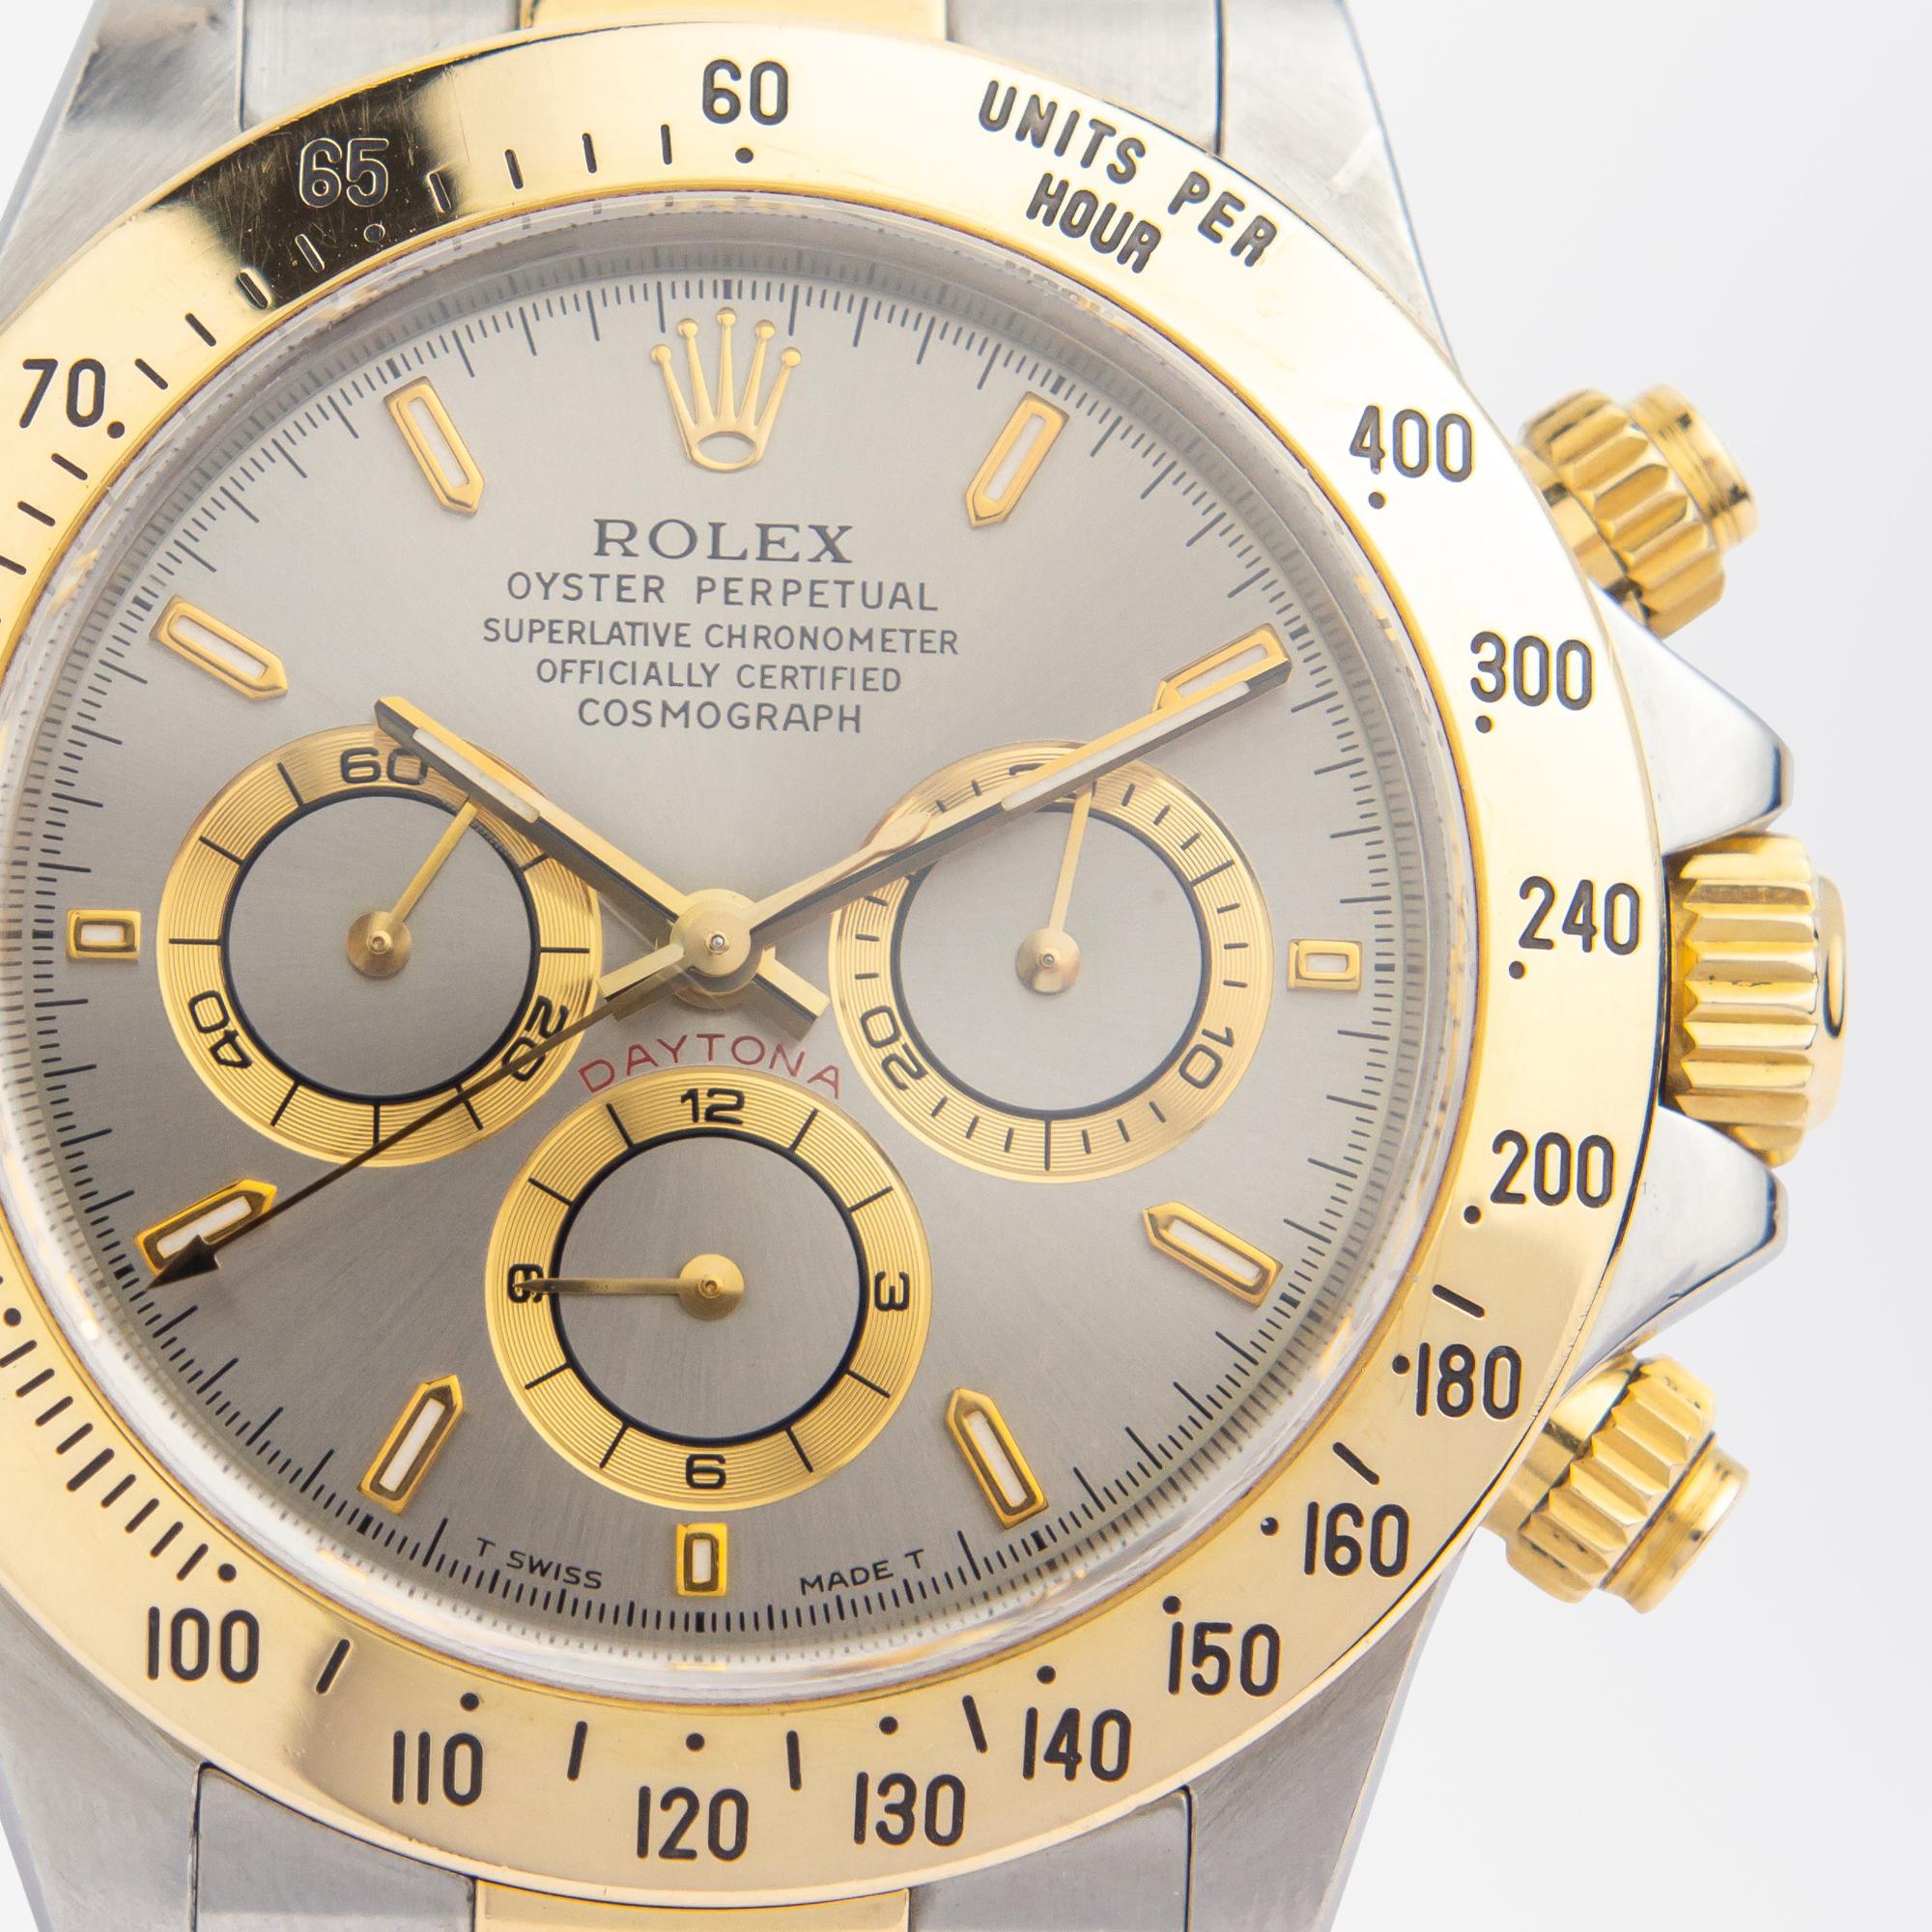 24k gold rolex watch price